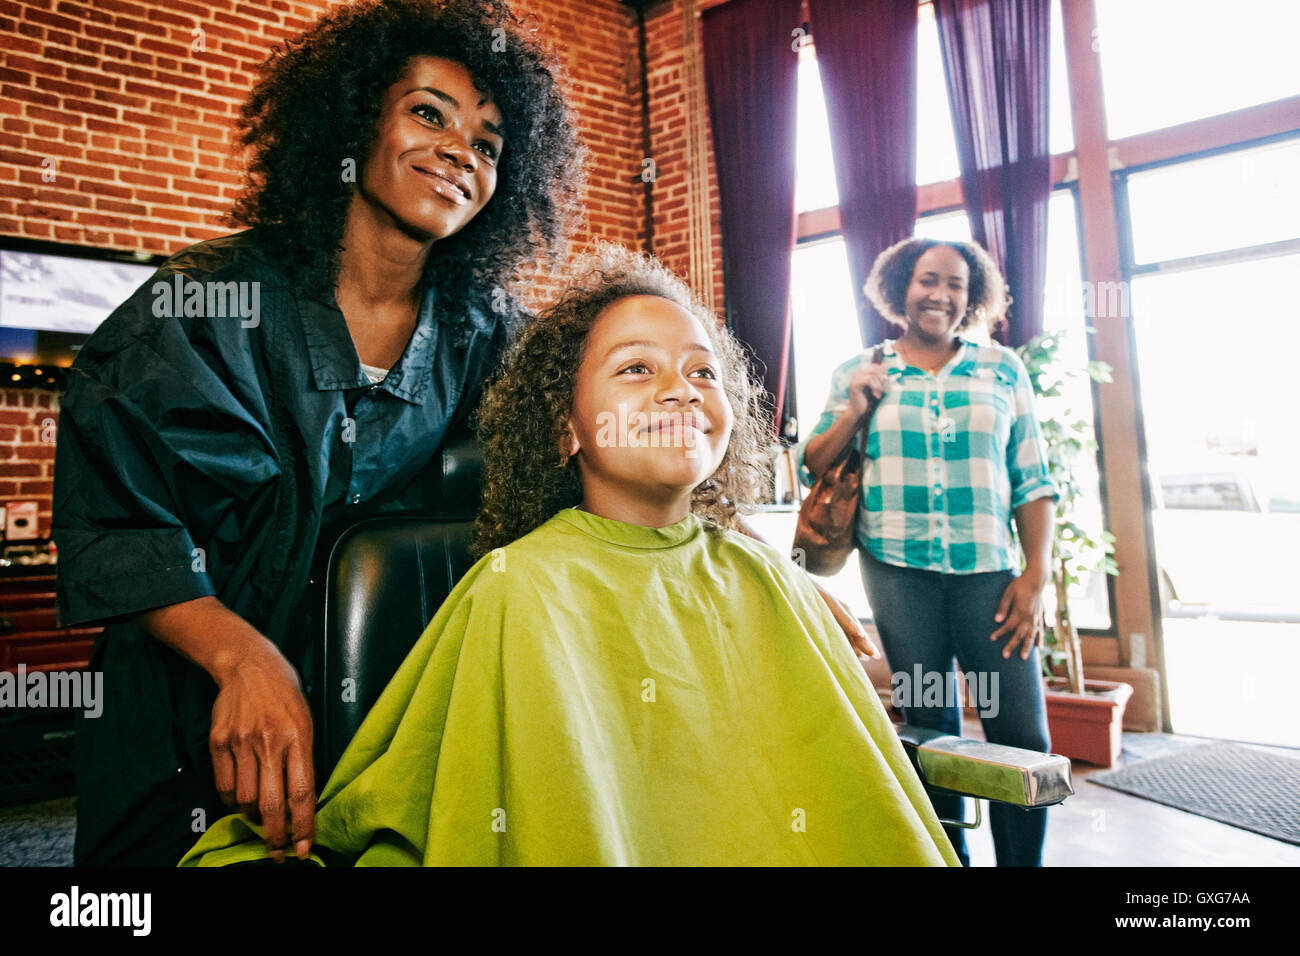 Smiling coiffure et clients dans un salon de coiffure Banque D'Images